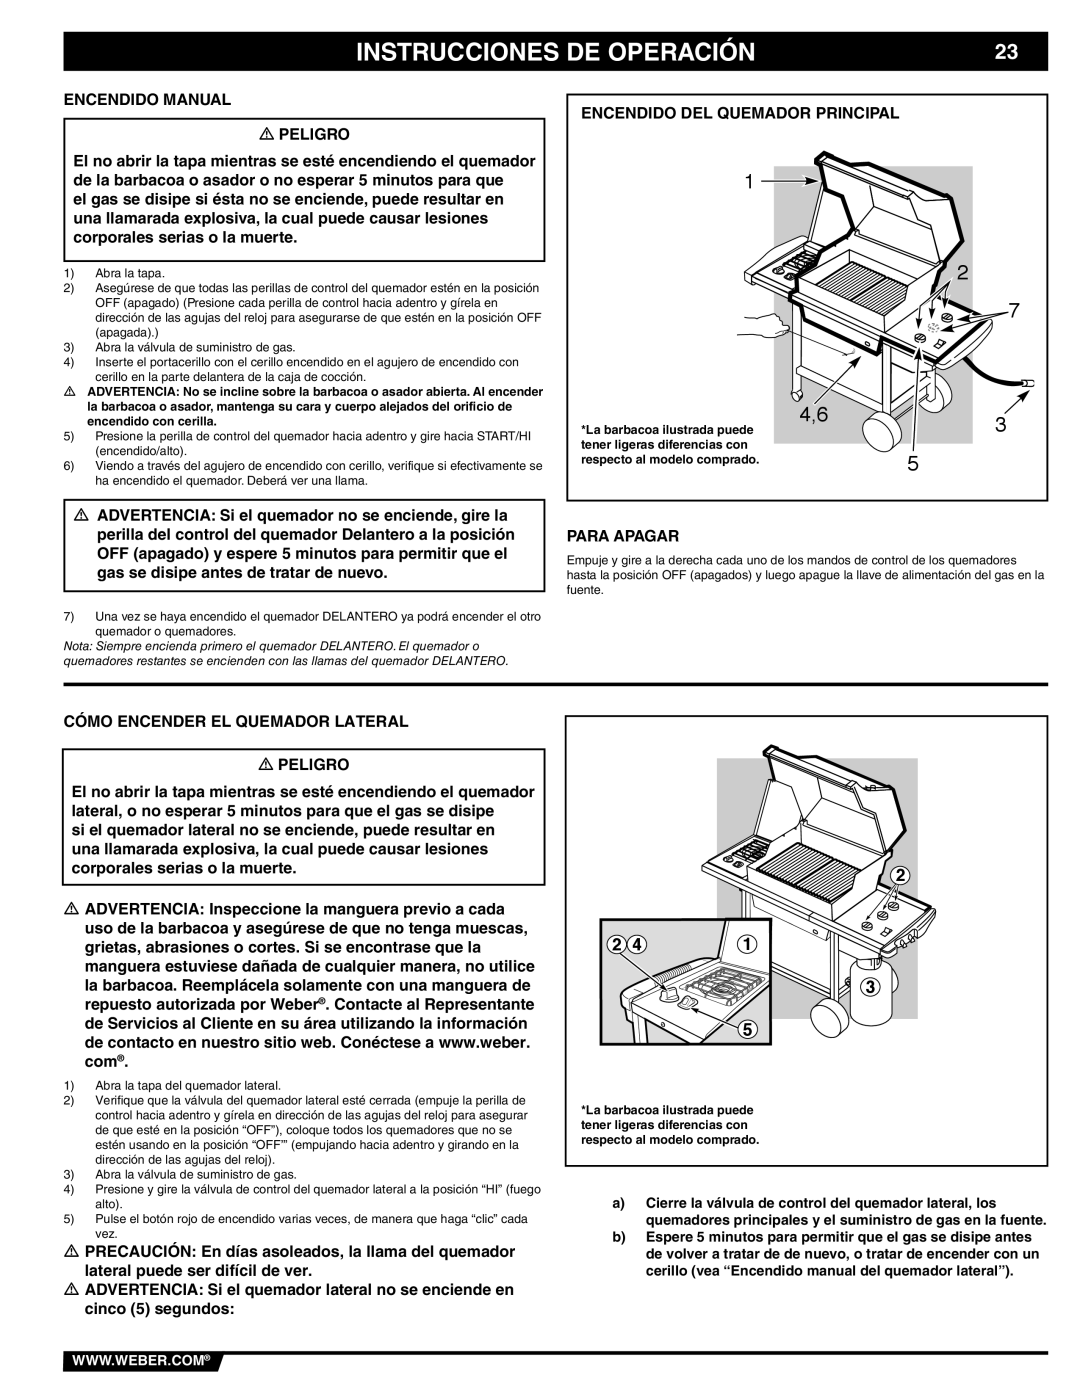 Weber 89839 manual Encendido Manual Peligro, Para Apagar, Cómo Encender EL Quemador Lateral Peligro 